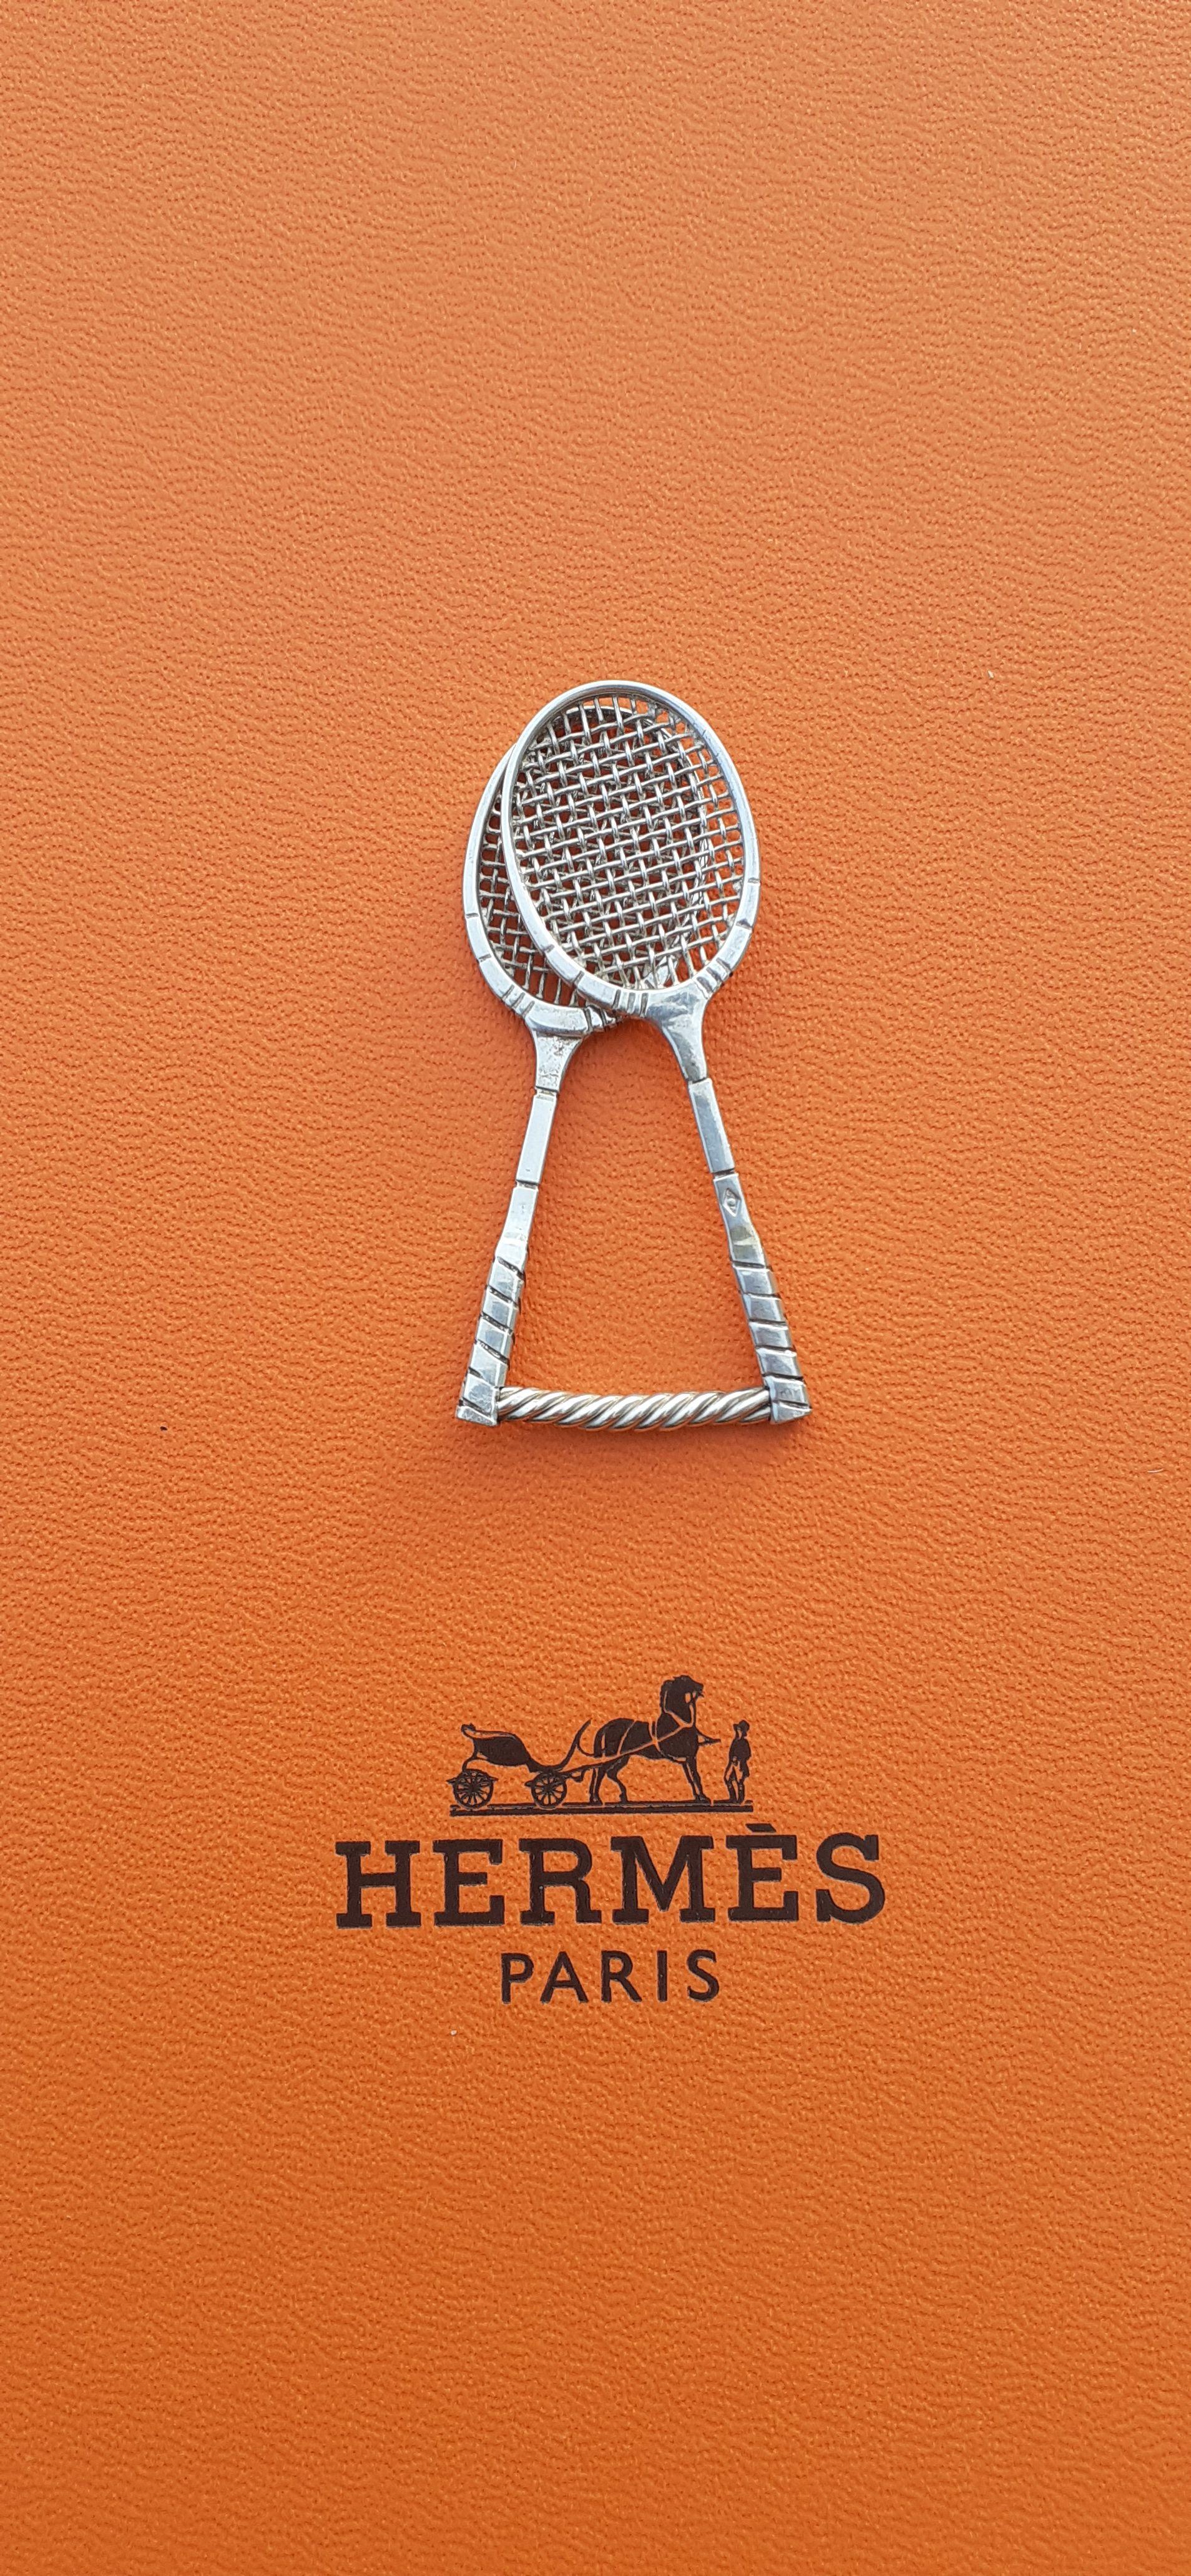 Seltene und schöne authentische Hermès Krawattenklammer

Geformt wie 2 Tennisschläger

Hergestellt für IPTA (Internationaler Verband für Plattformtennis)

Wahrscheinlich ein Vintage-Artikel, wenn man die Schachtel betrachtet

Hergestellt aus Silber